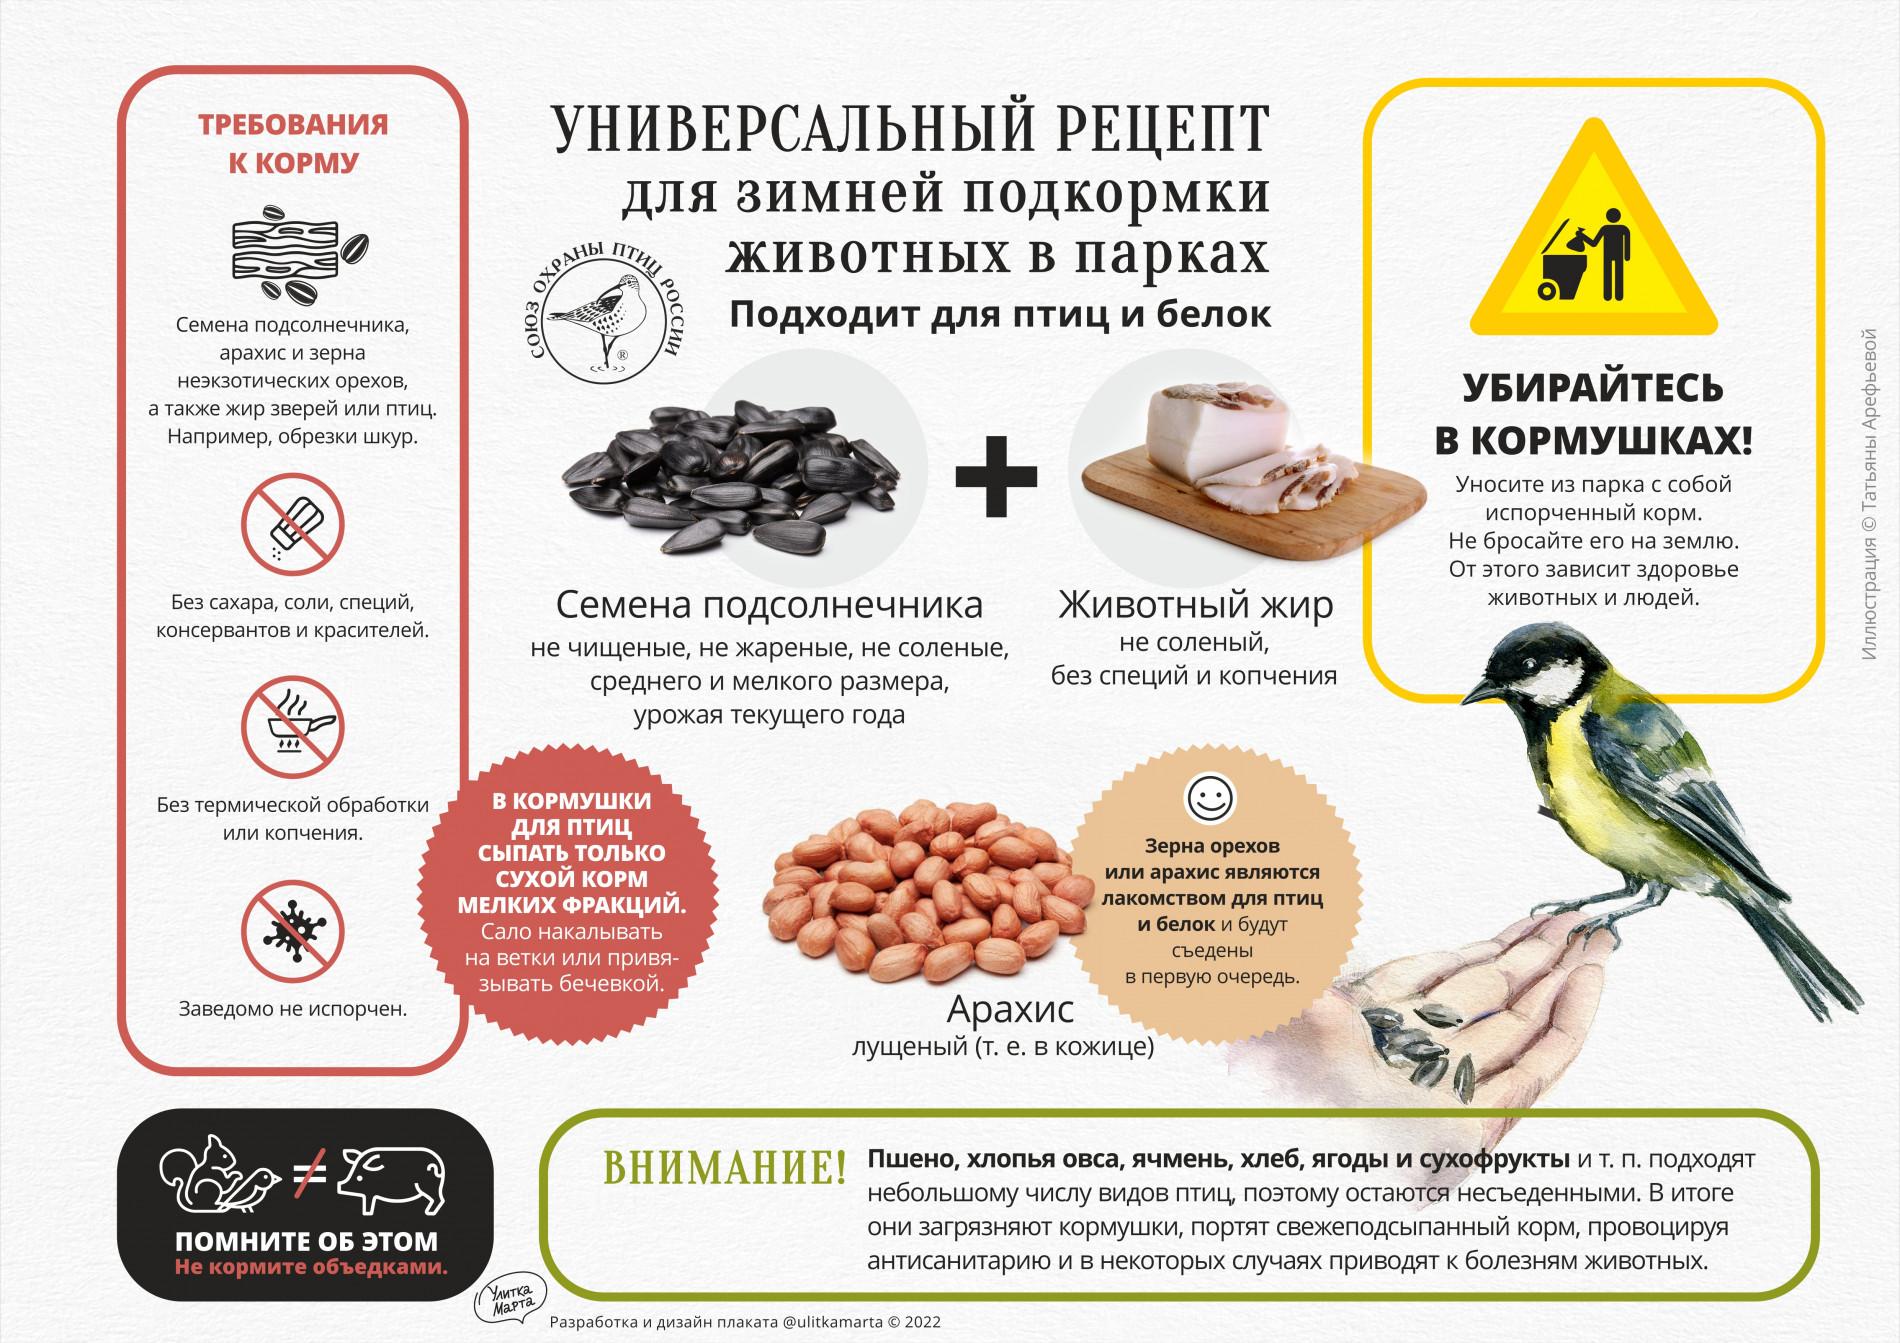 Покормите птиц! - Приокско-Террасный государственный природный биосферный  заповедник